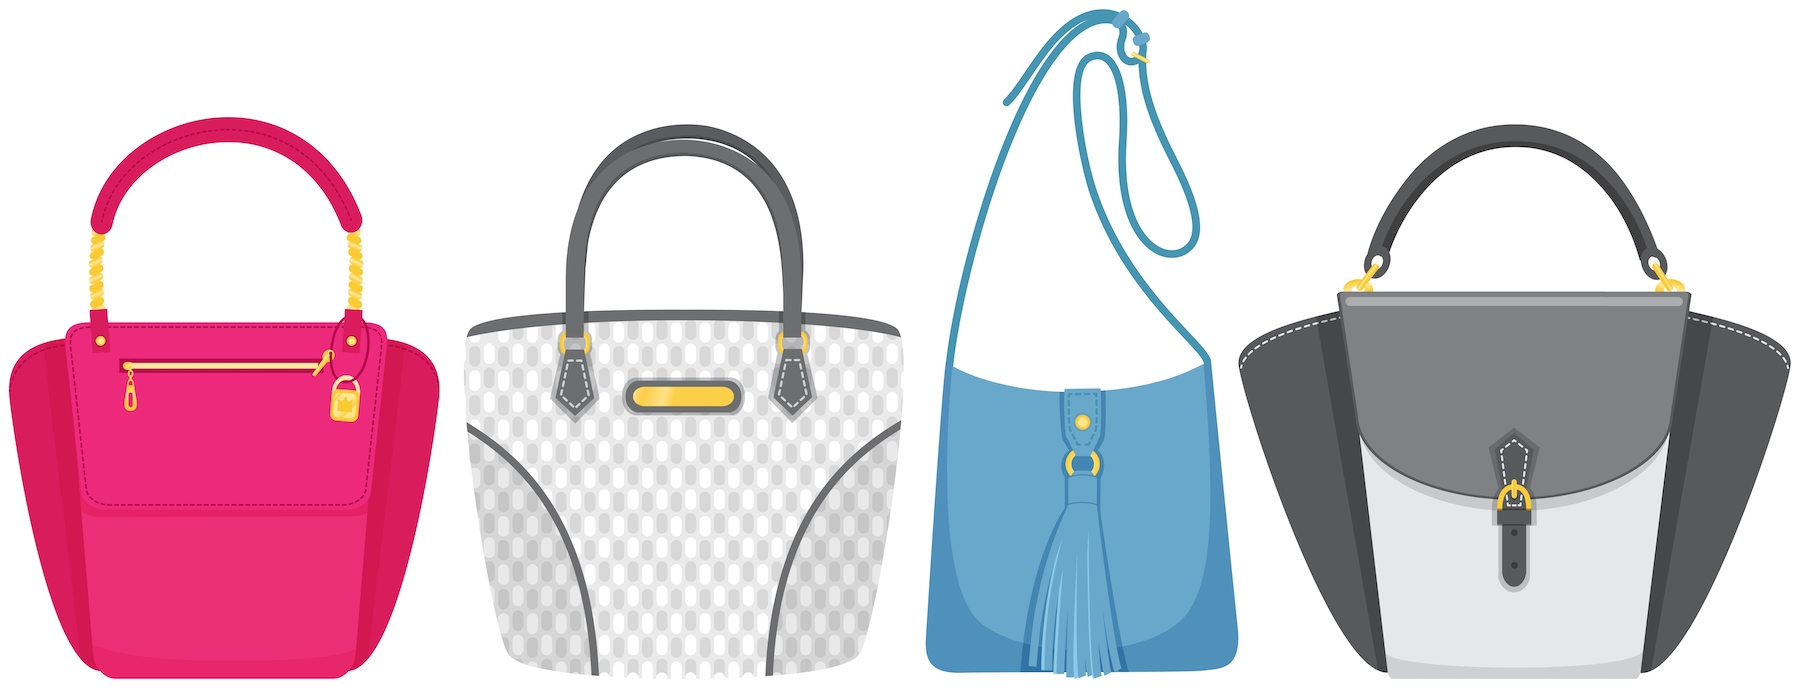 shutterstock 2123009843 - Holding Onto Your Designer Handbag